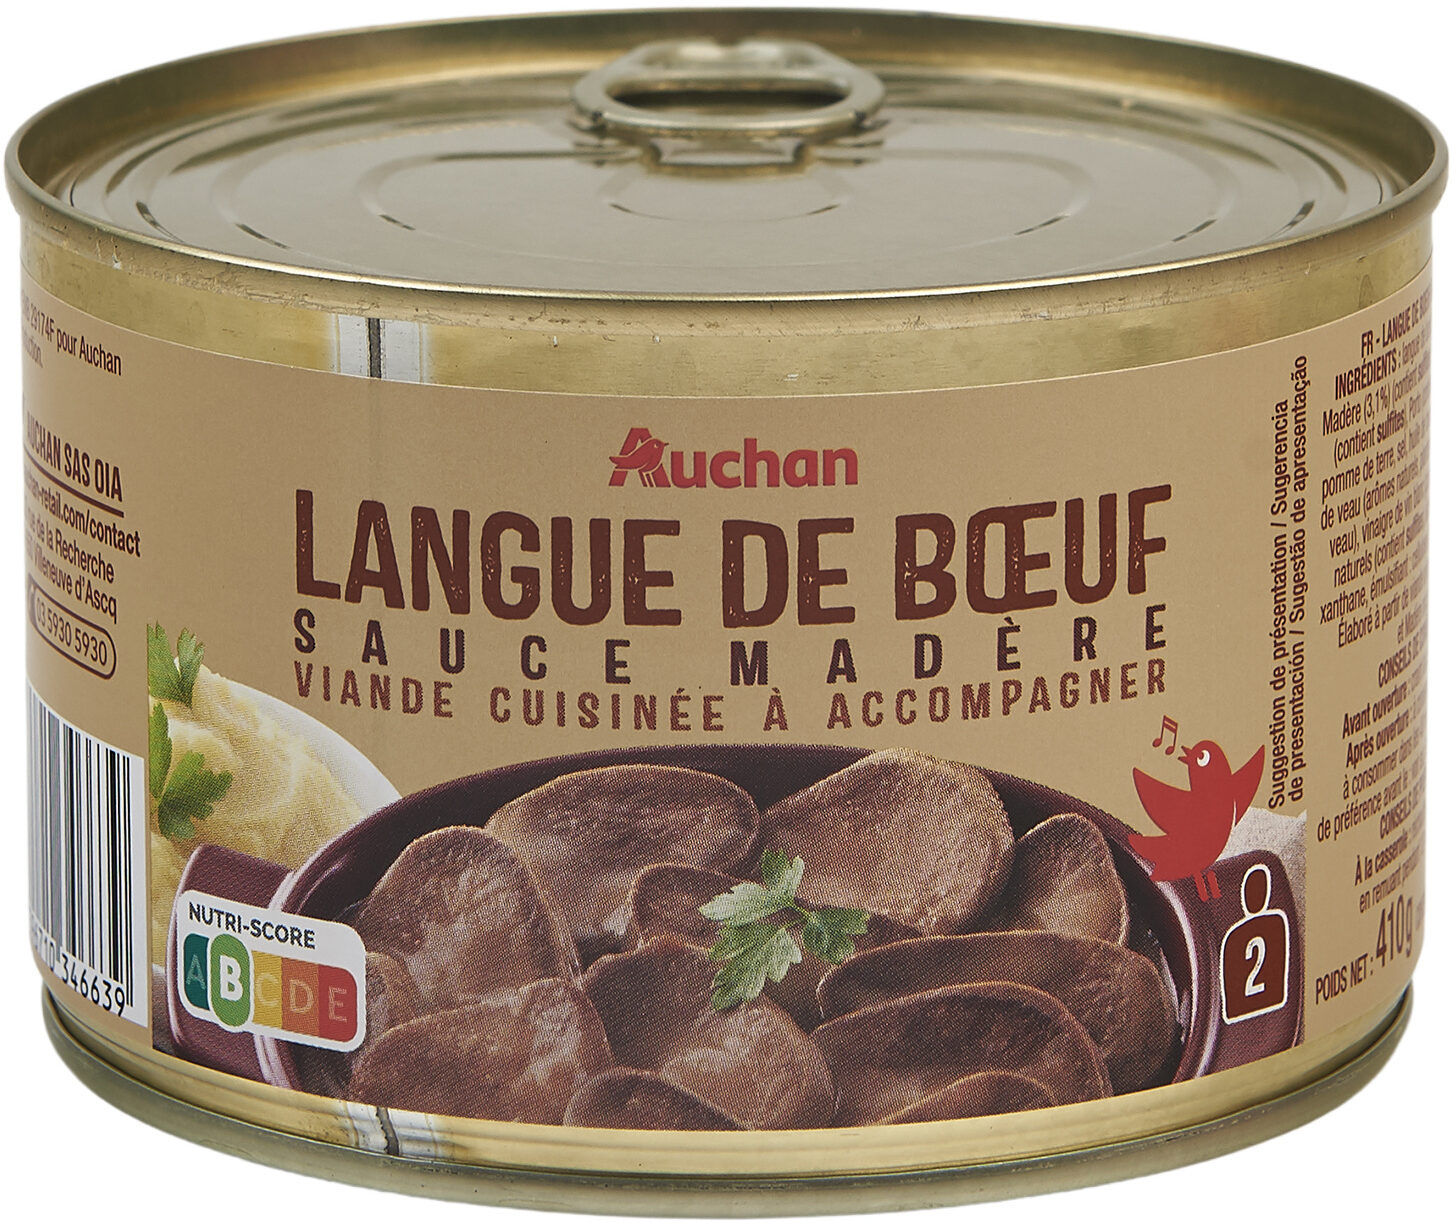 Langue de boeuf sauce madère - Product - fr